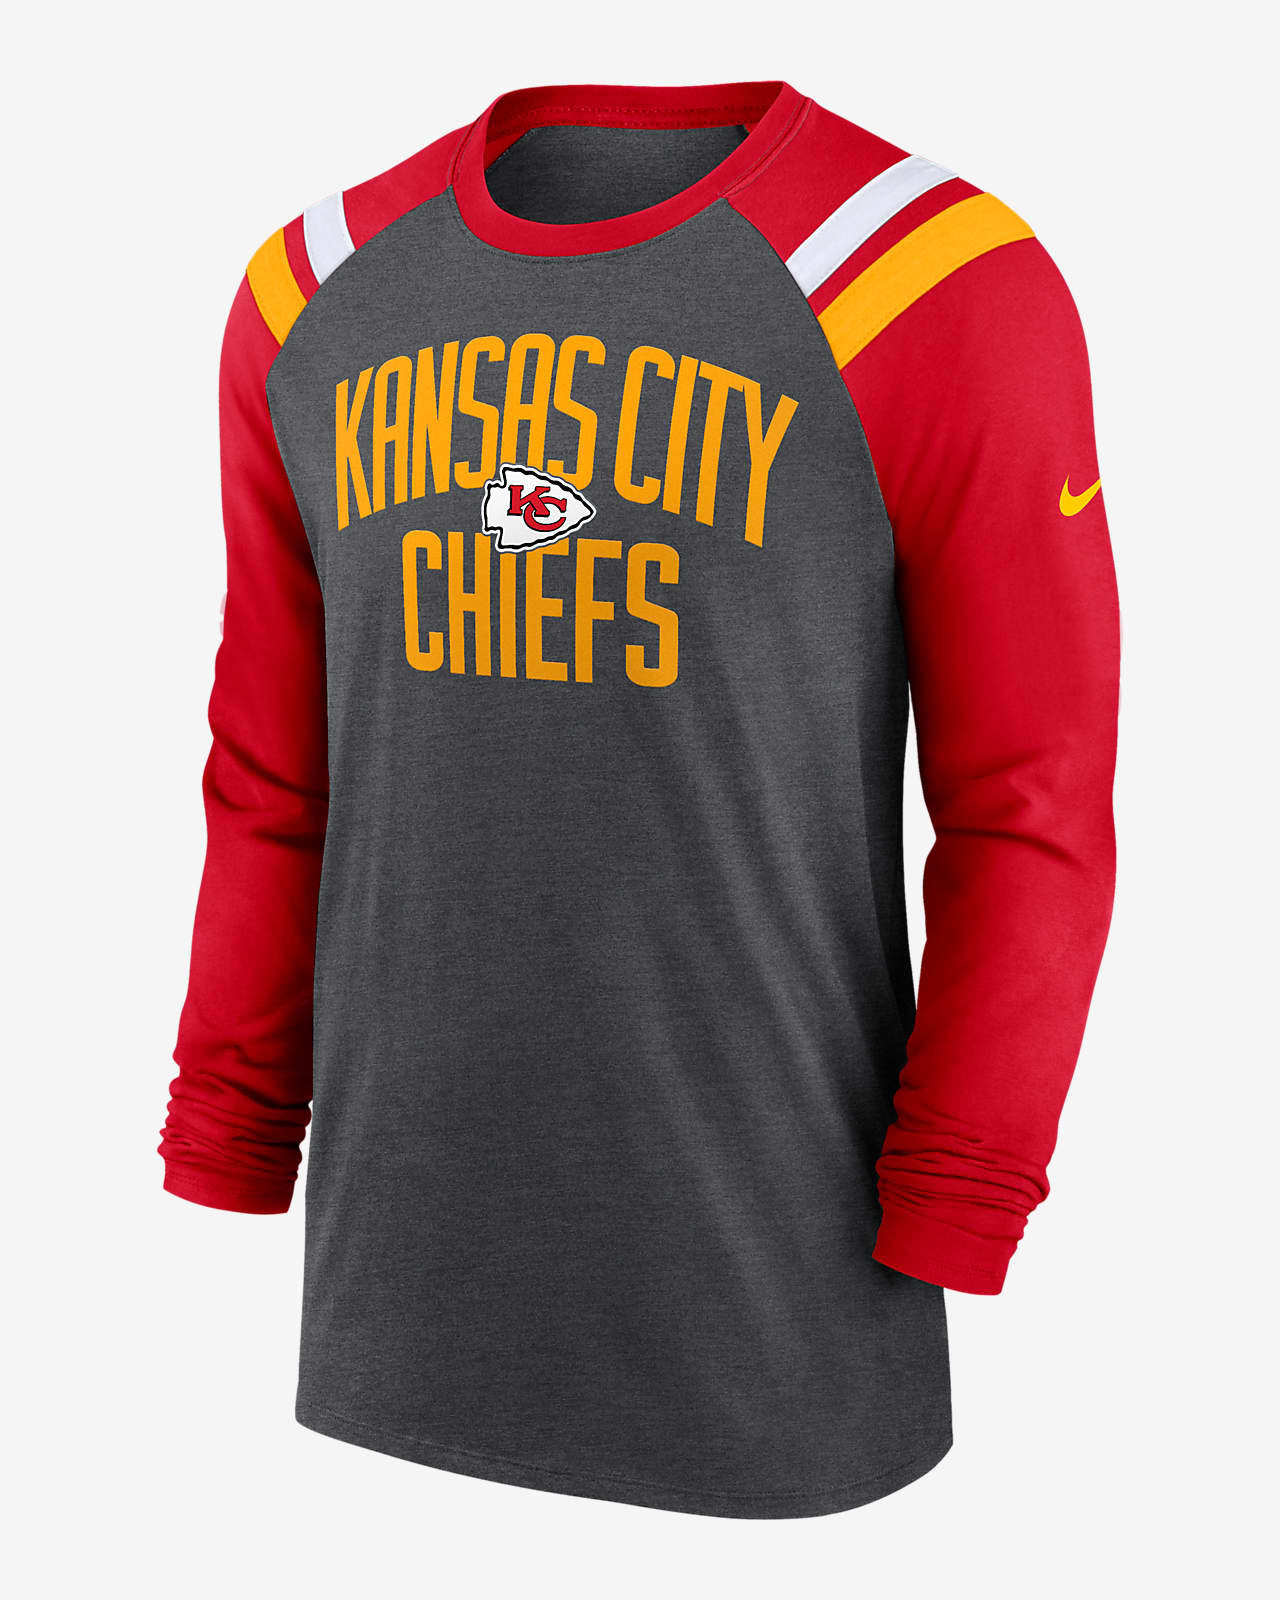 chiefs shirt